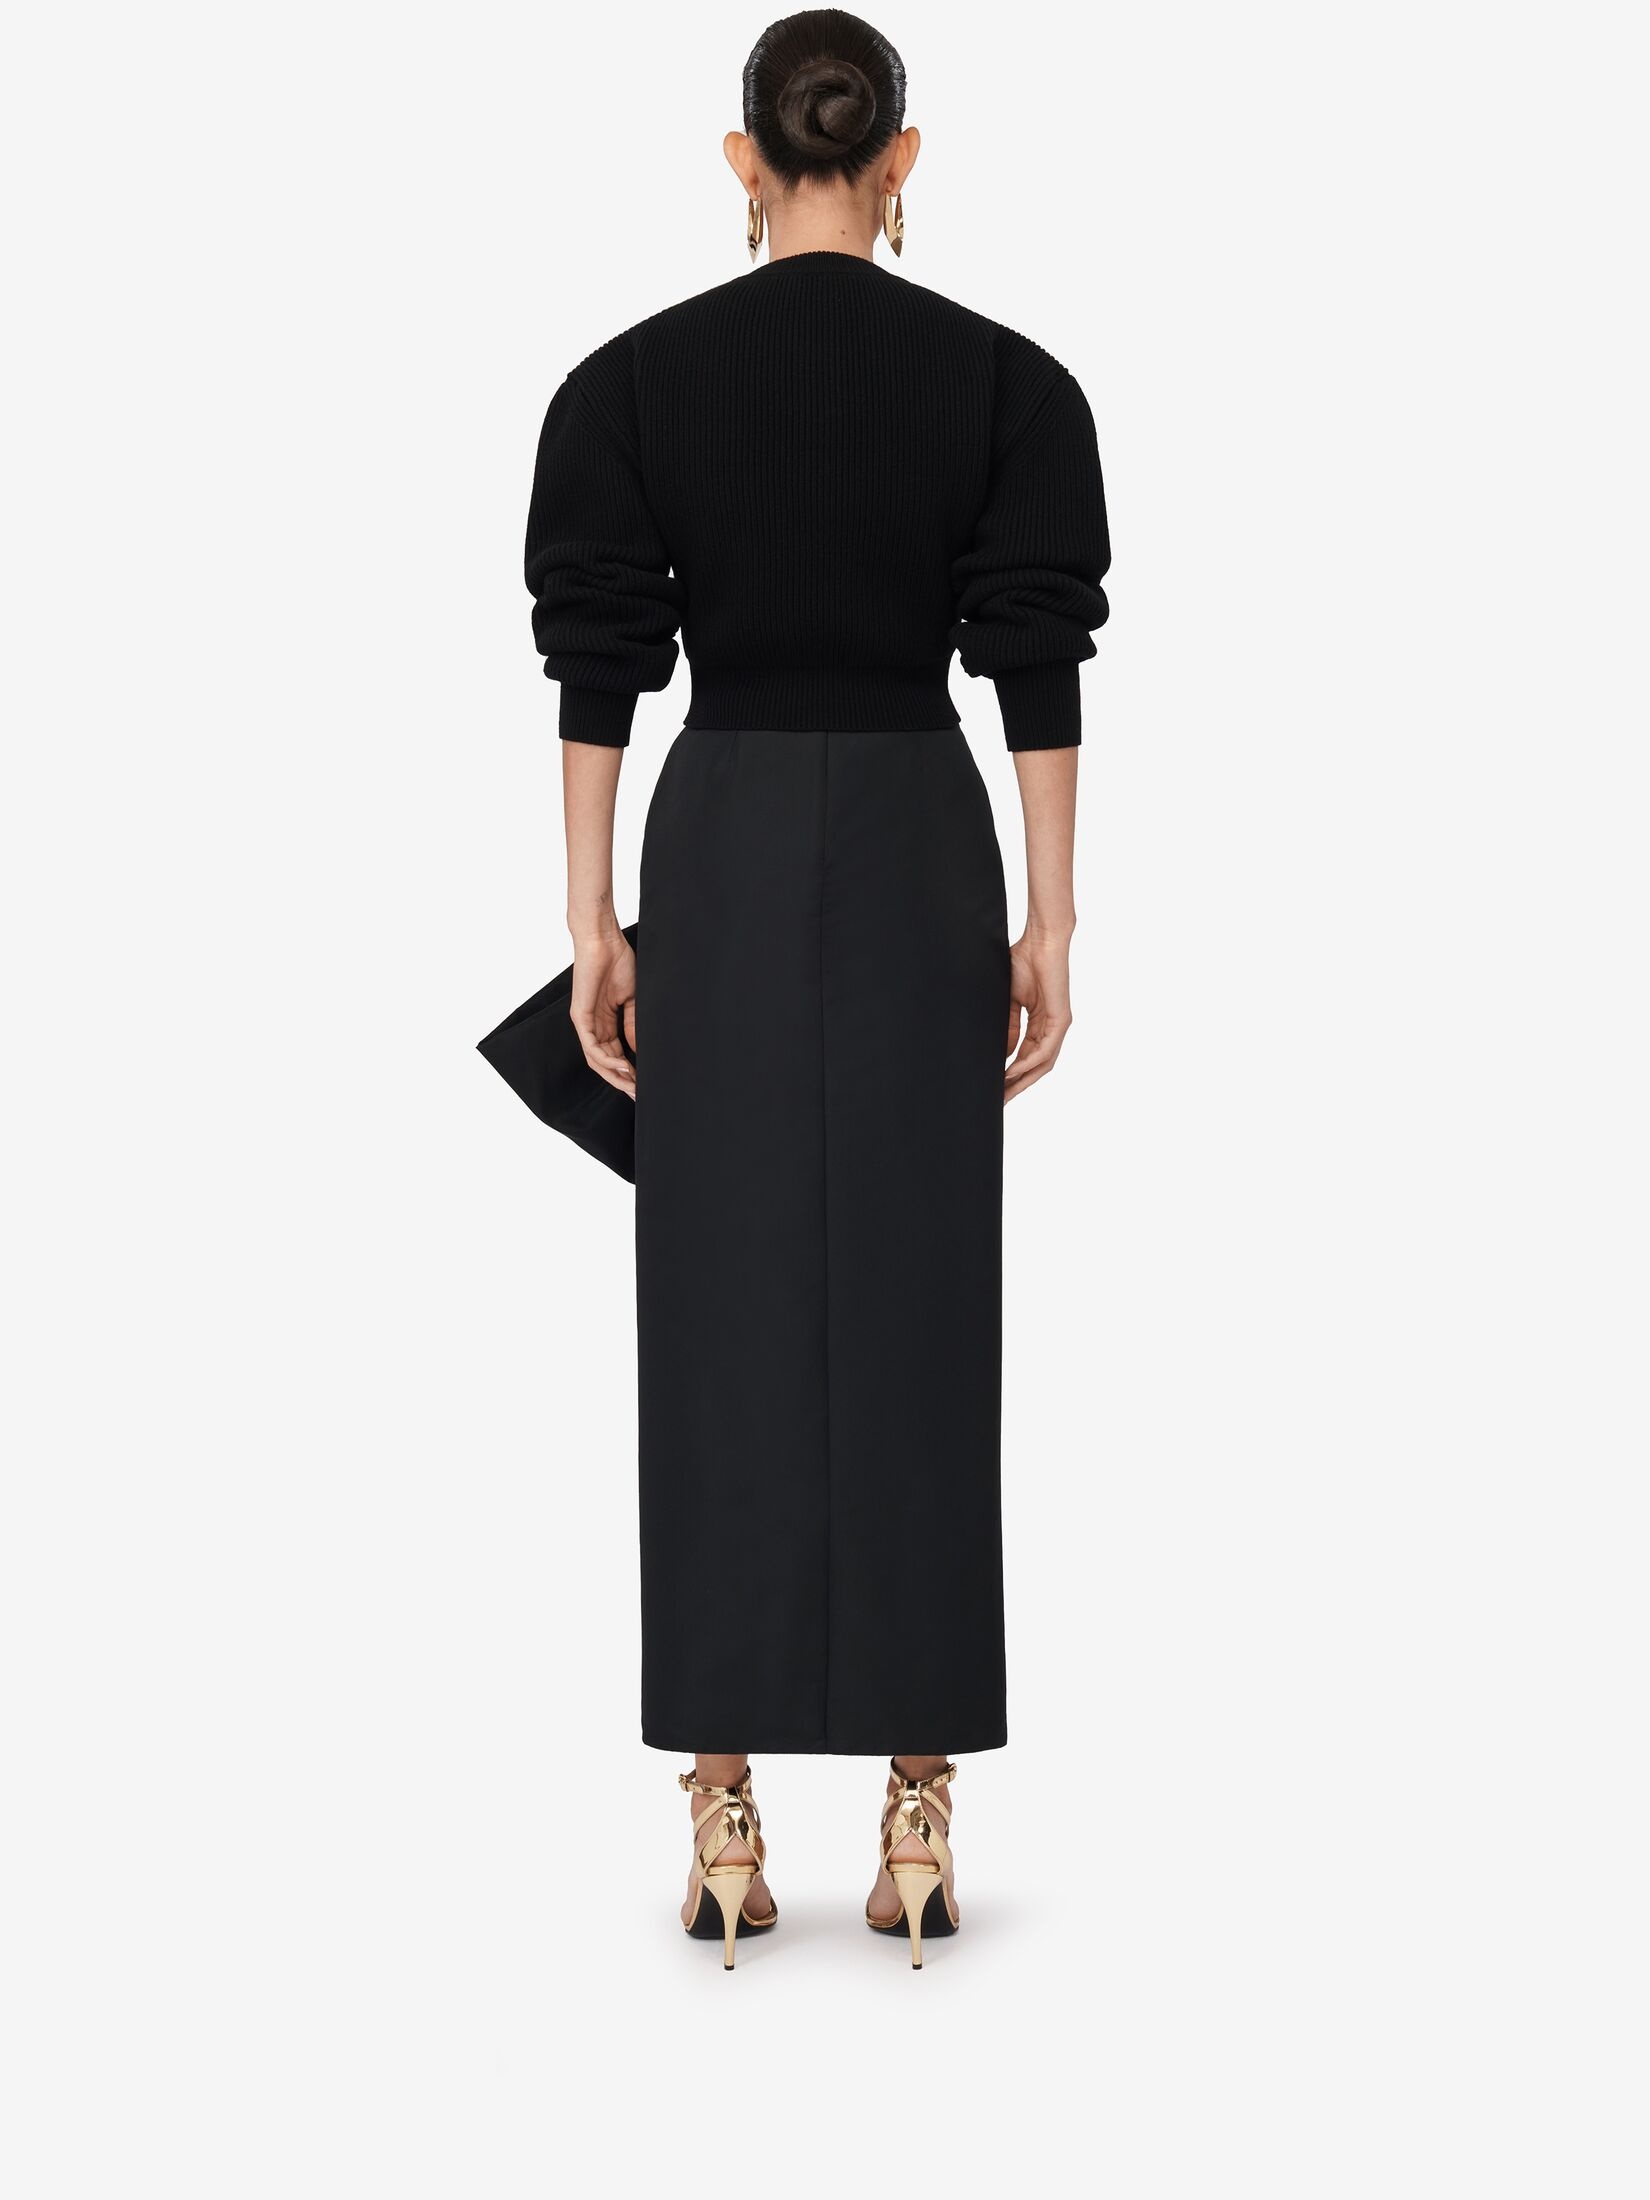 Women's Bow Detail Slim Skirt in Black - 4